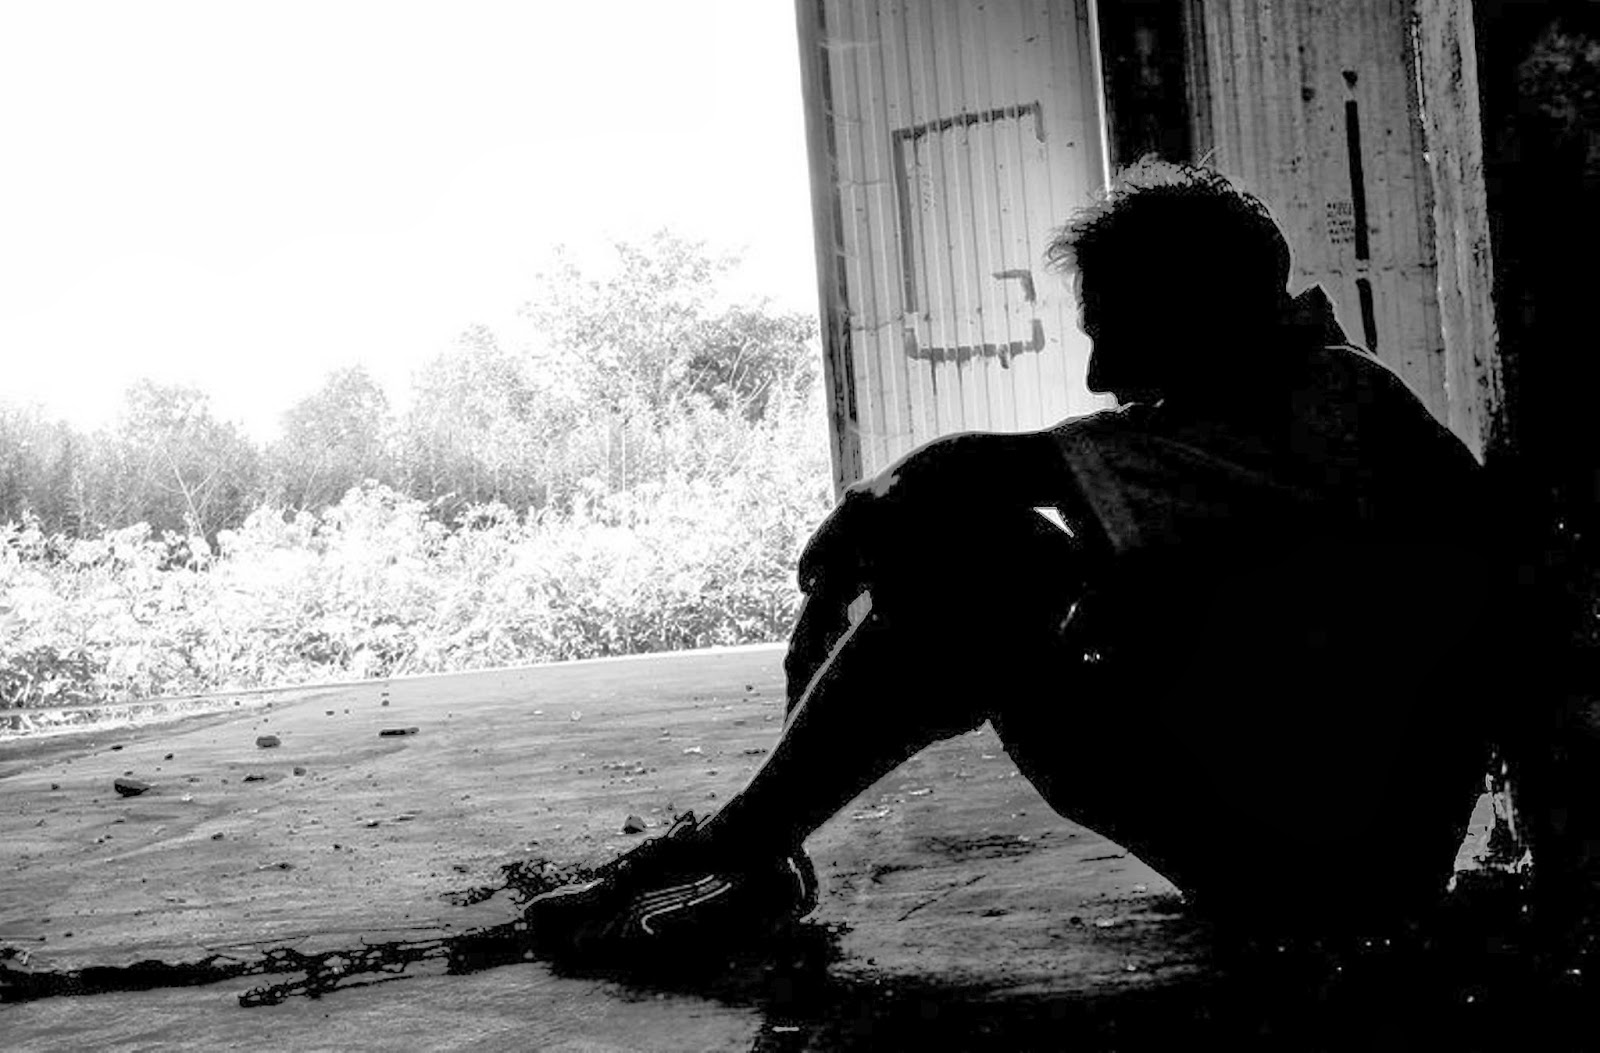 슬픈 혼자 소년 벽지,검정,하얀,사진,검정색과 흰색,흑백 사진